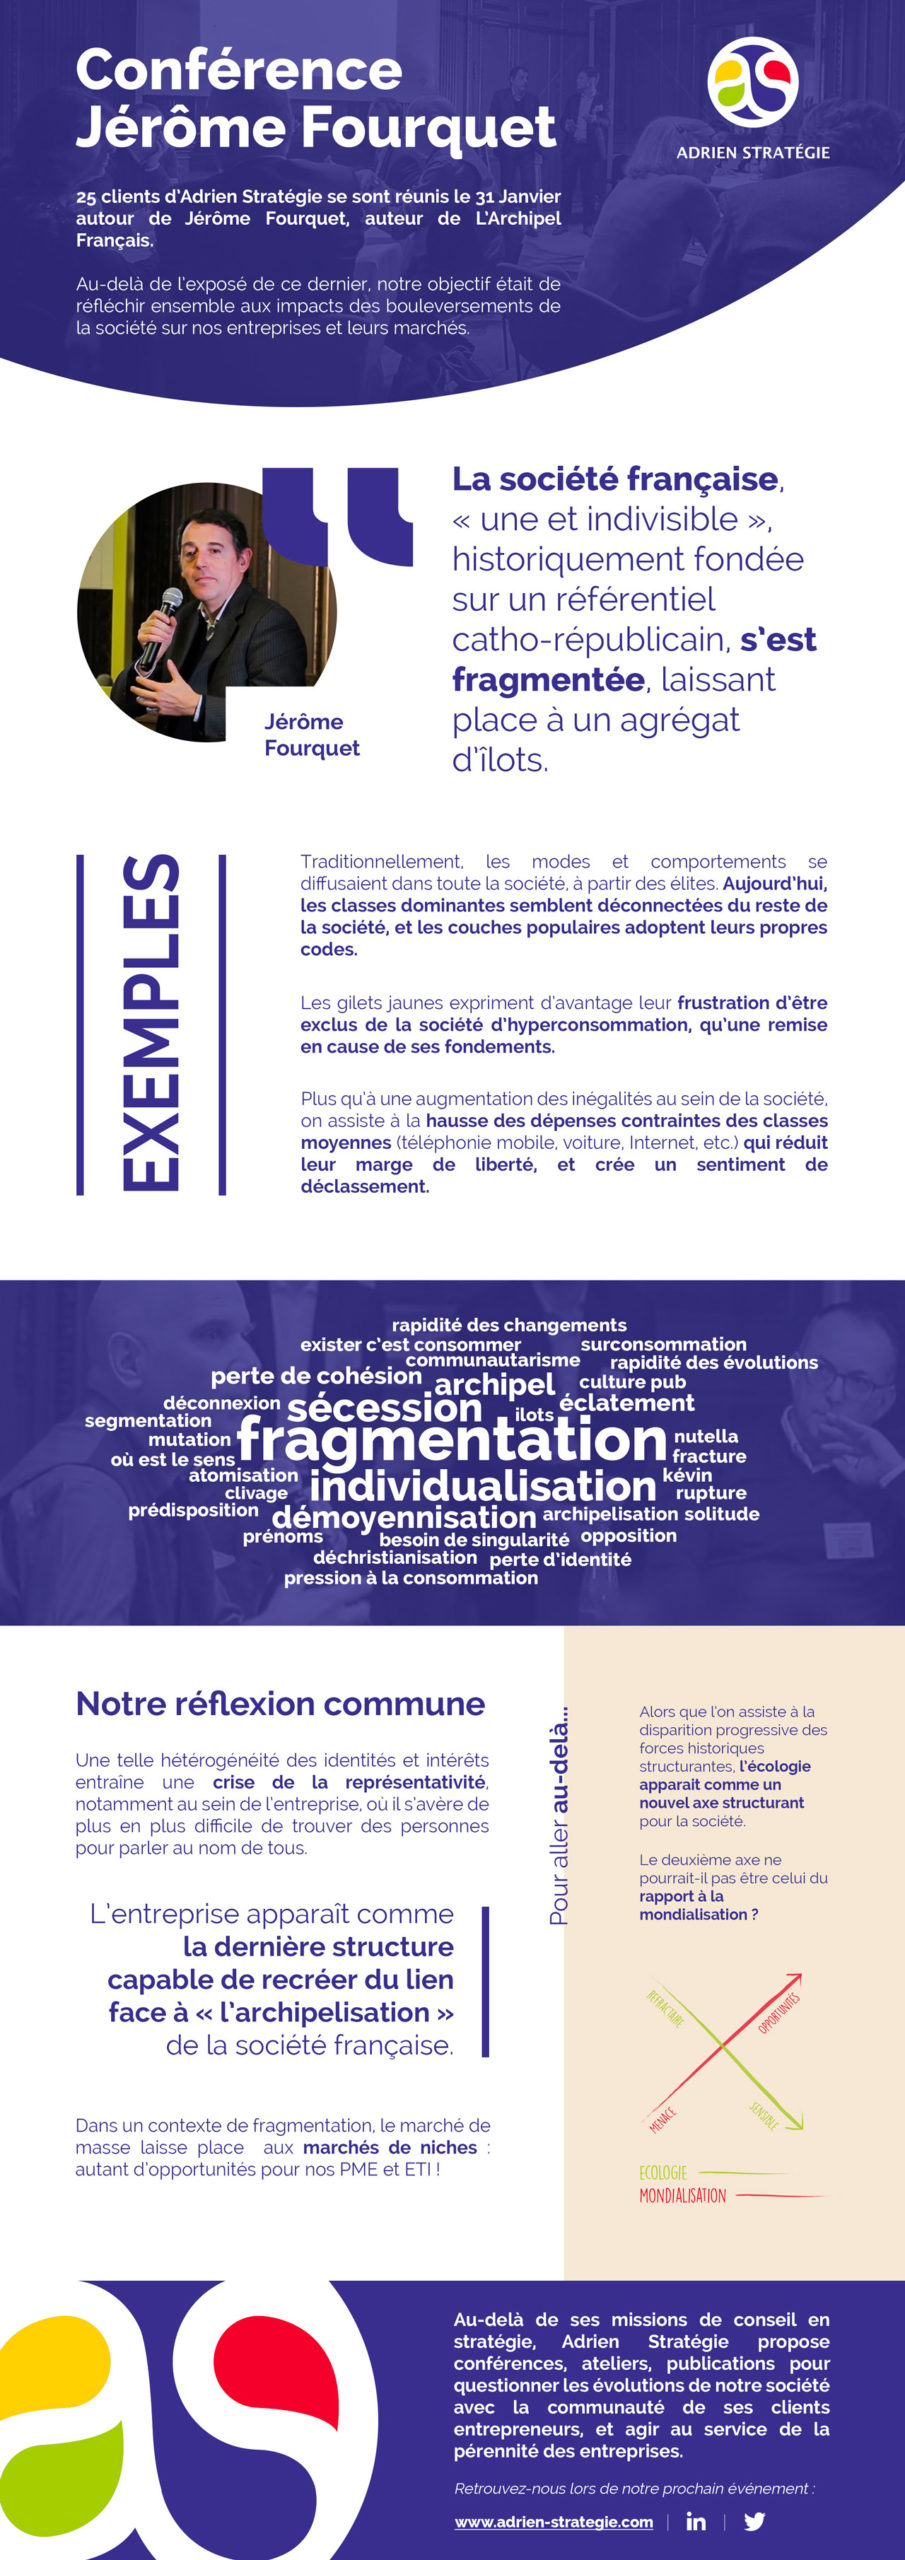 Infographie de l'intervention de Jérôme Fourquet lors d'une conférence"rance organisée par Adrien Stratégie